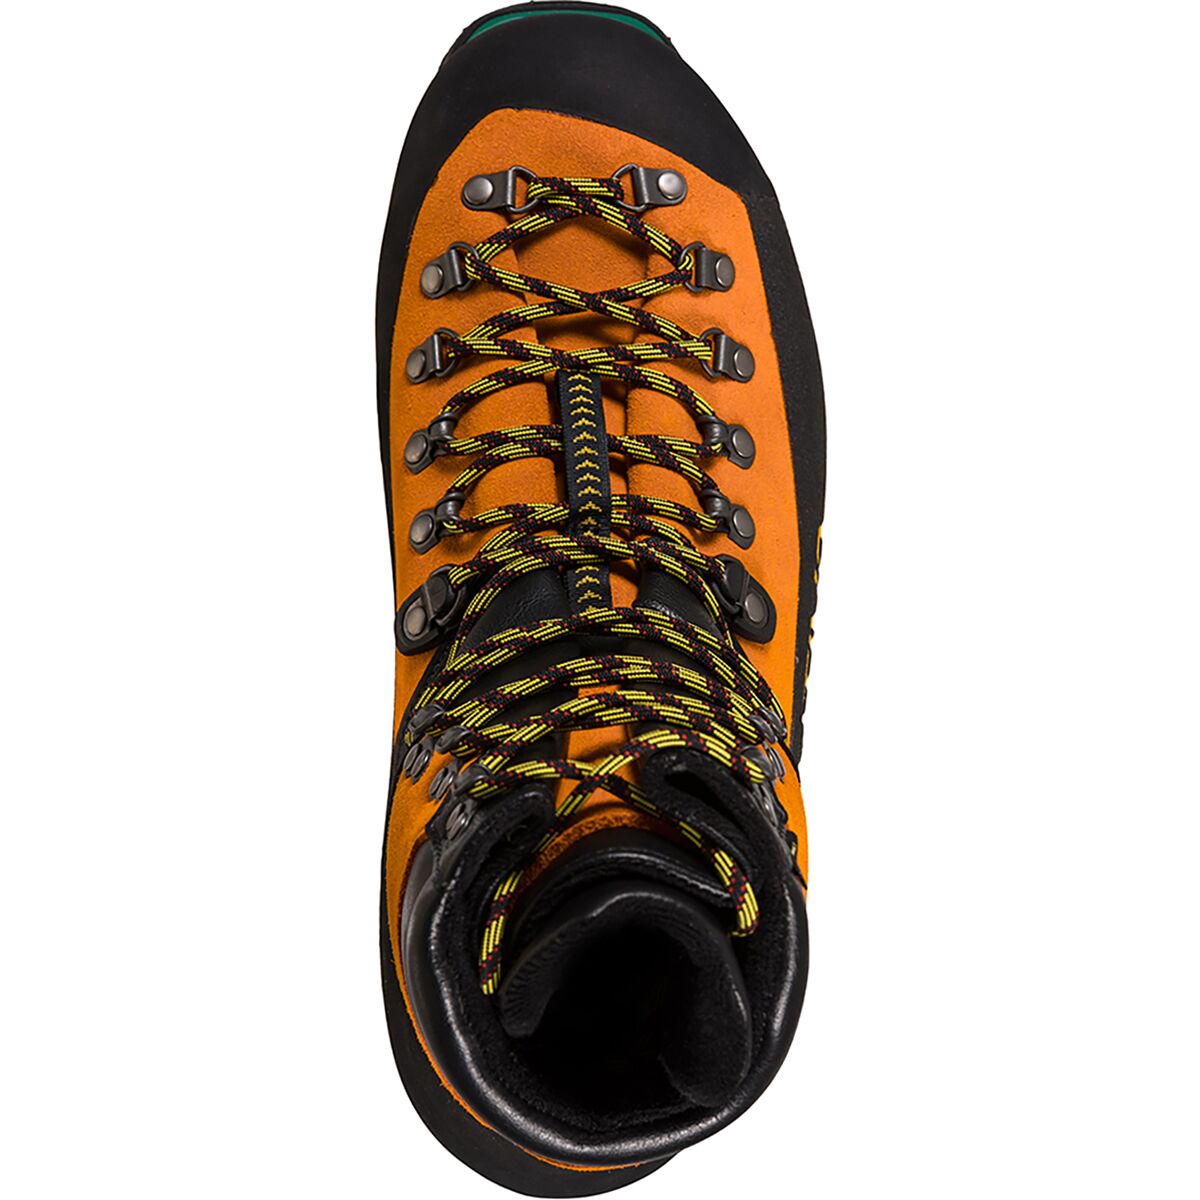 La Sportiva Nepal S3 Work GTX Boot - Men's - Footwear